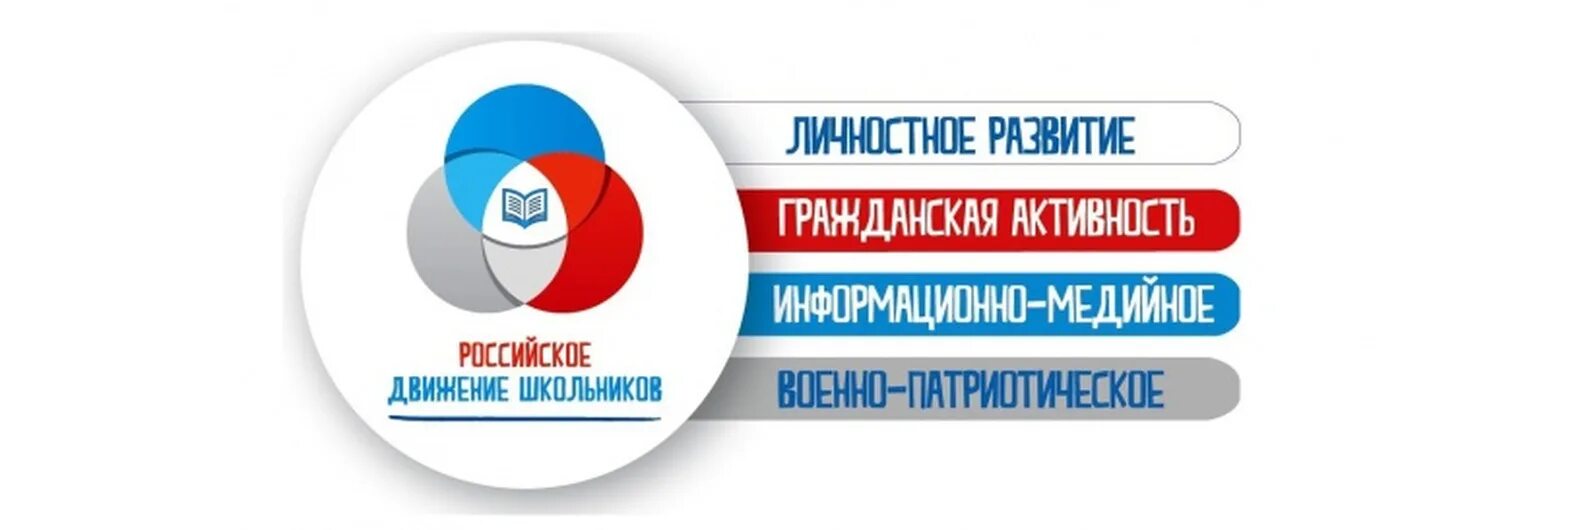 Гражданская активность логотип.